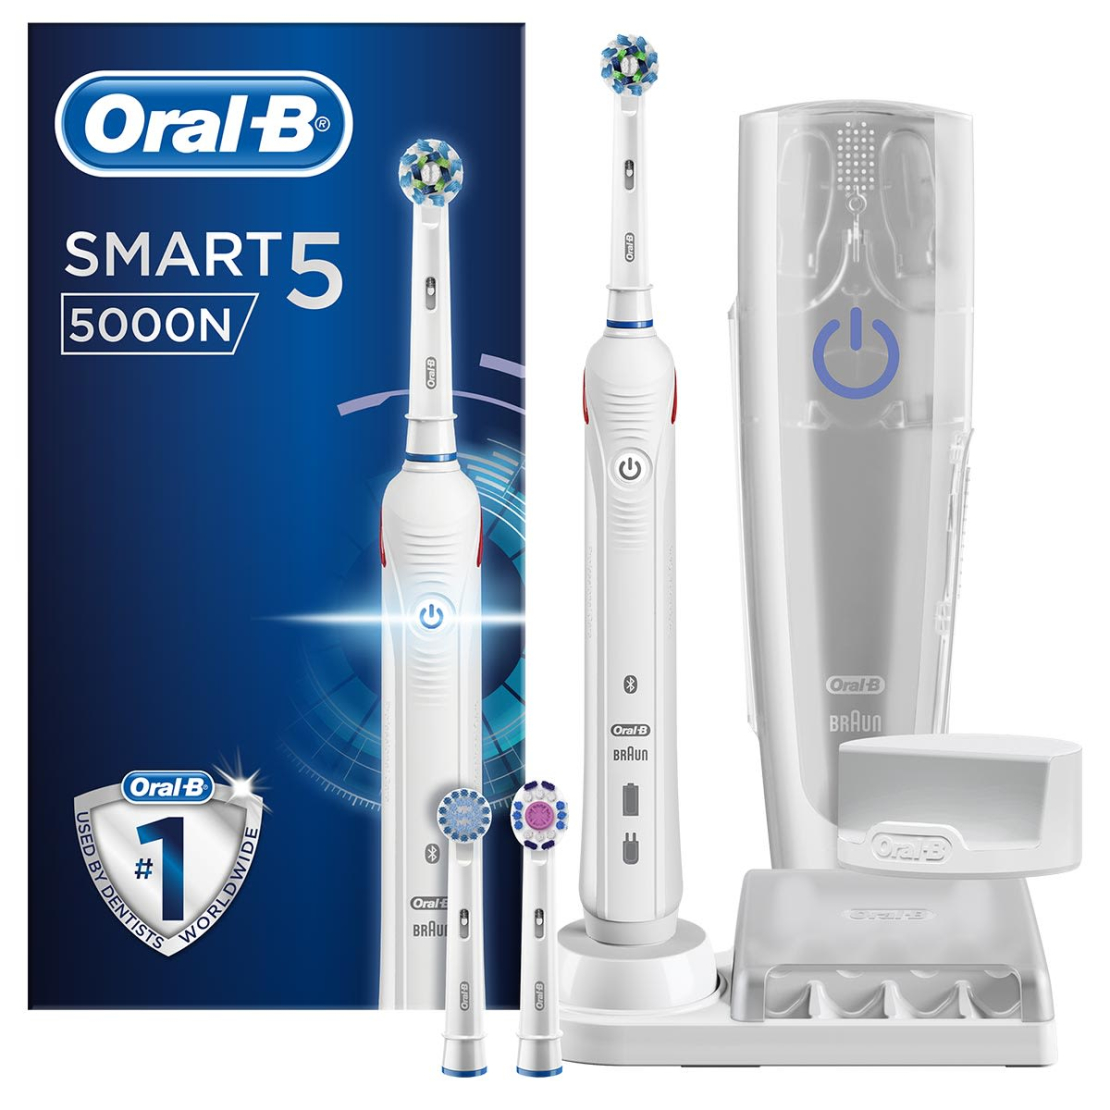 אורל-בי - SMART 5 5000N מברשת שיניים חשמלית Oral-B